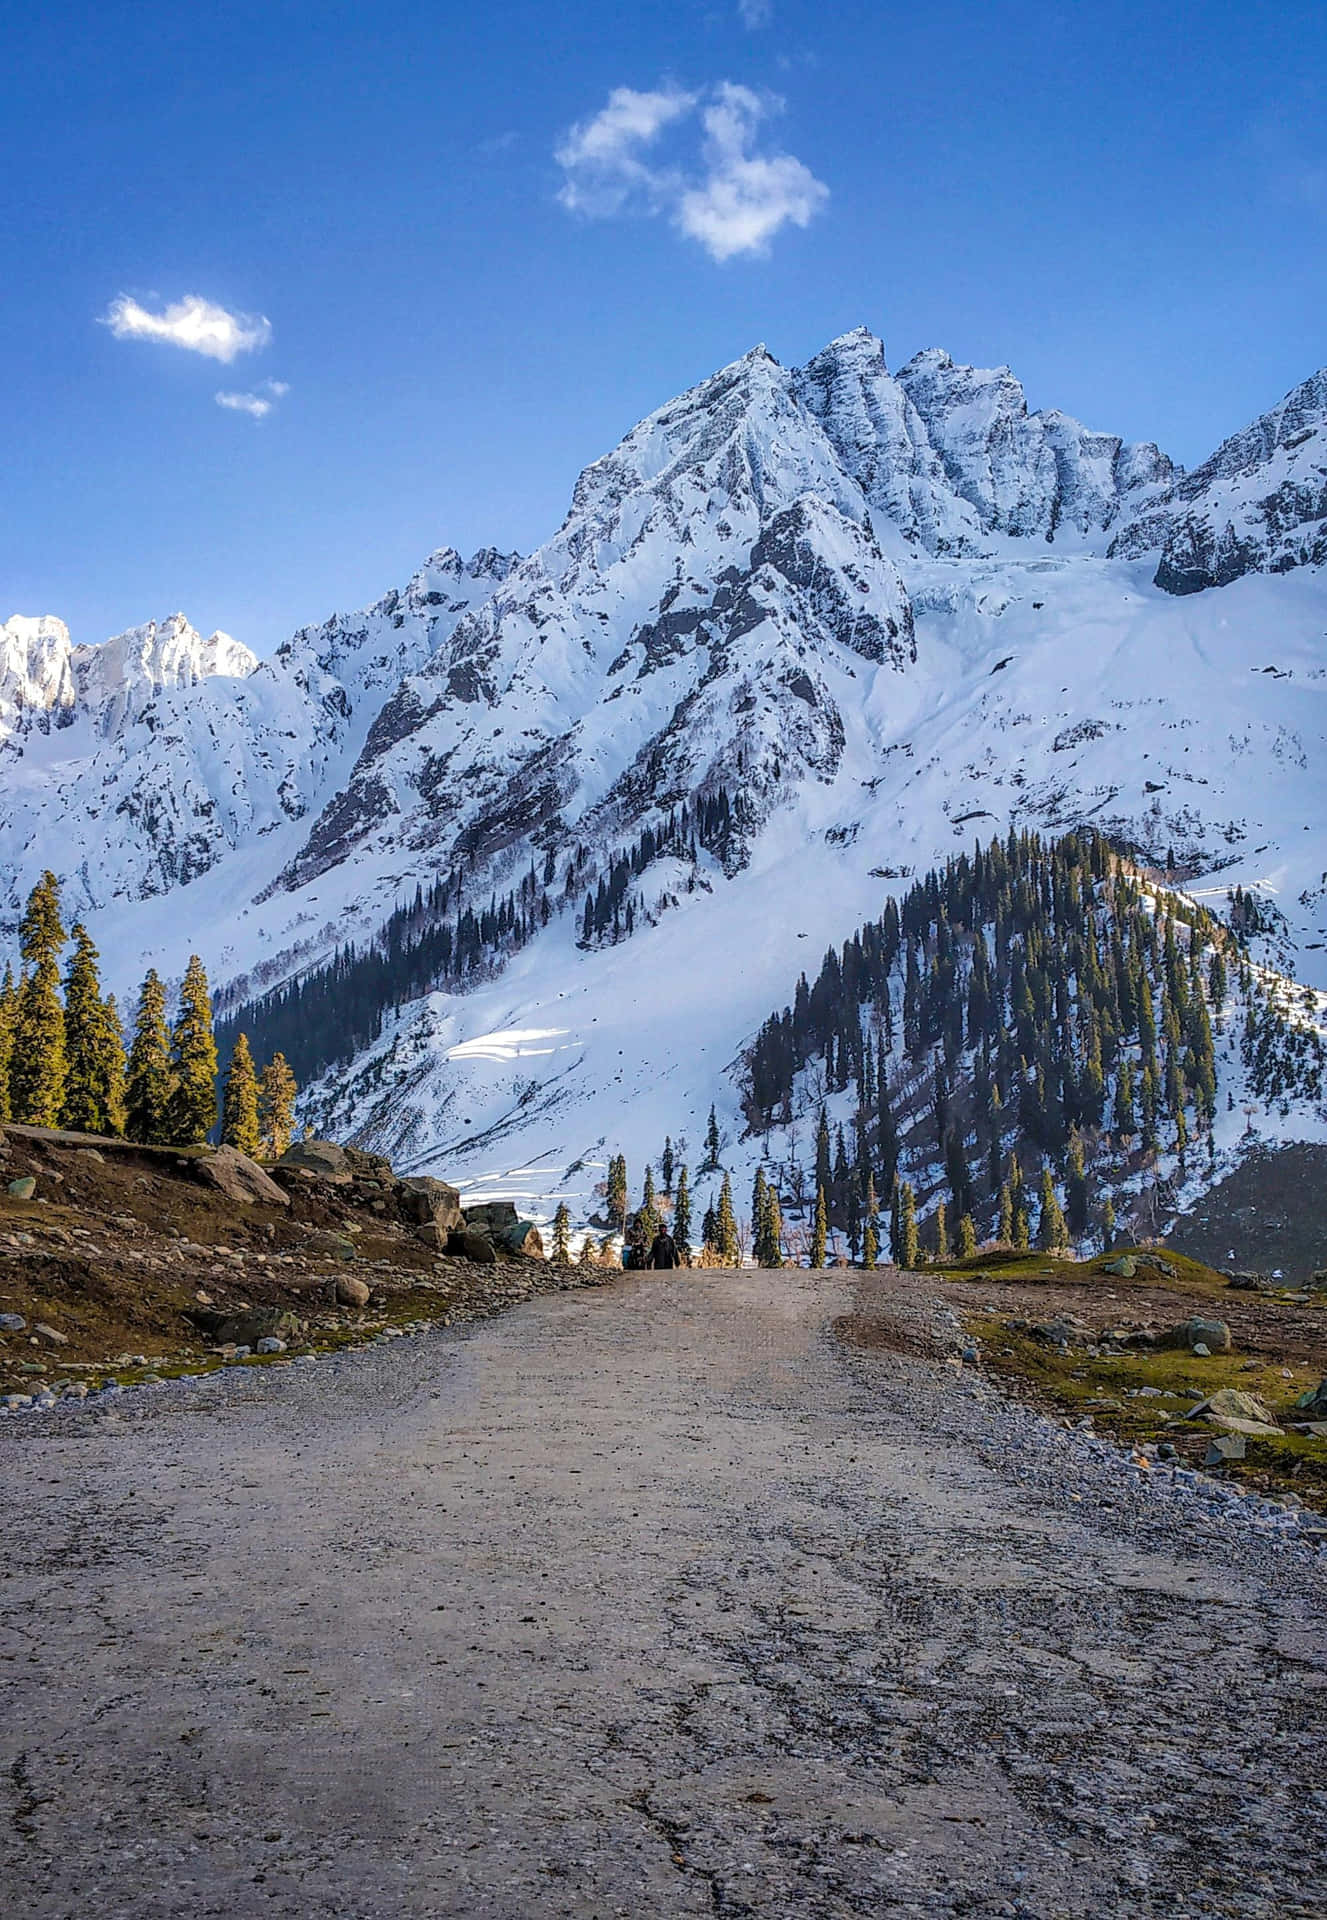 Kashmir Mountain Road Snowy Peaks Wallpaper